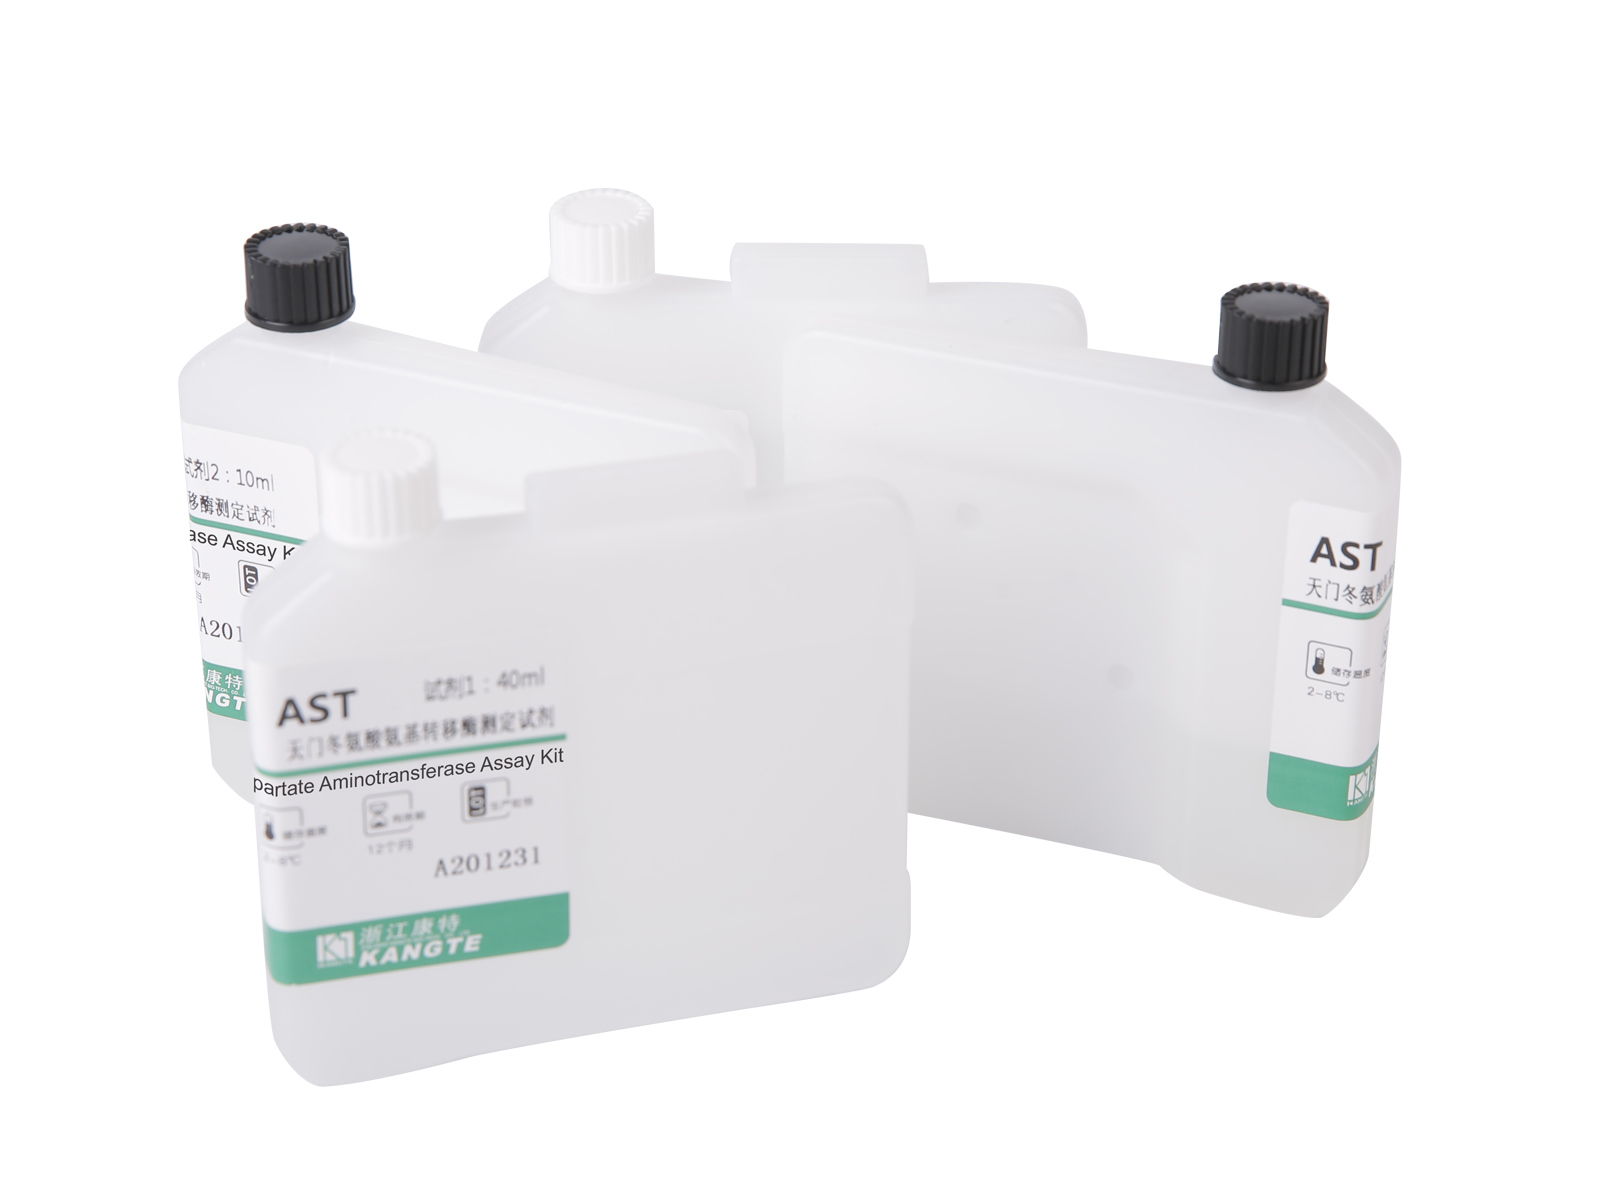 【AST】Aspartate Aminotransferase Assay Kit (Kaedah Substrat Aspartate)